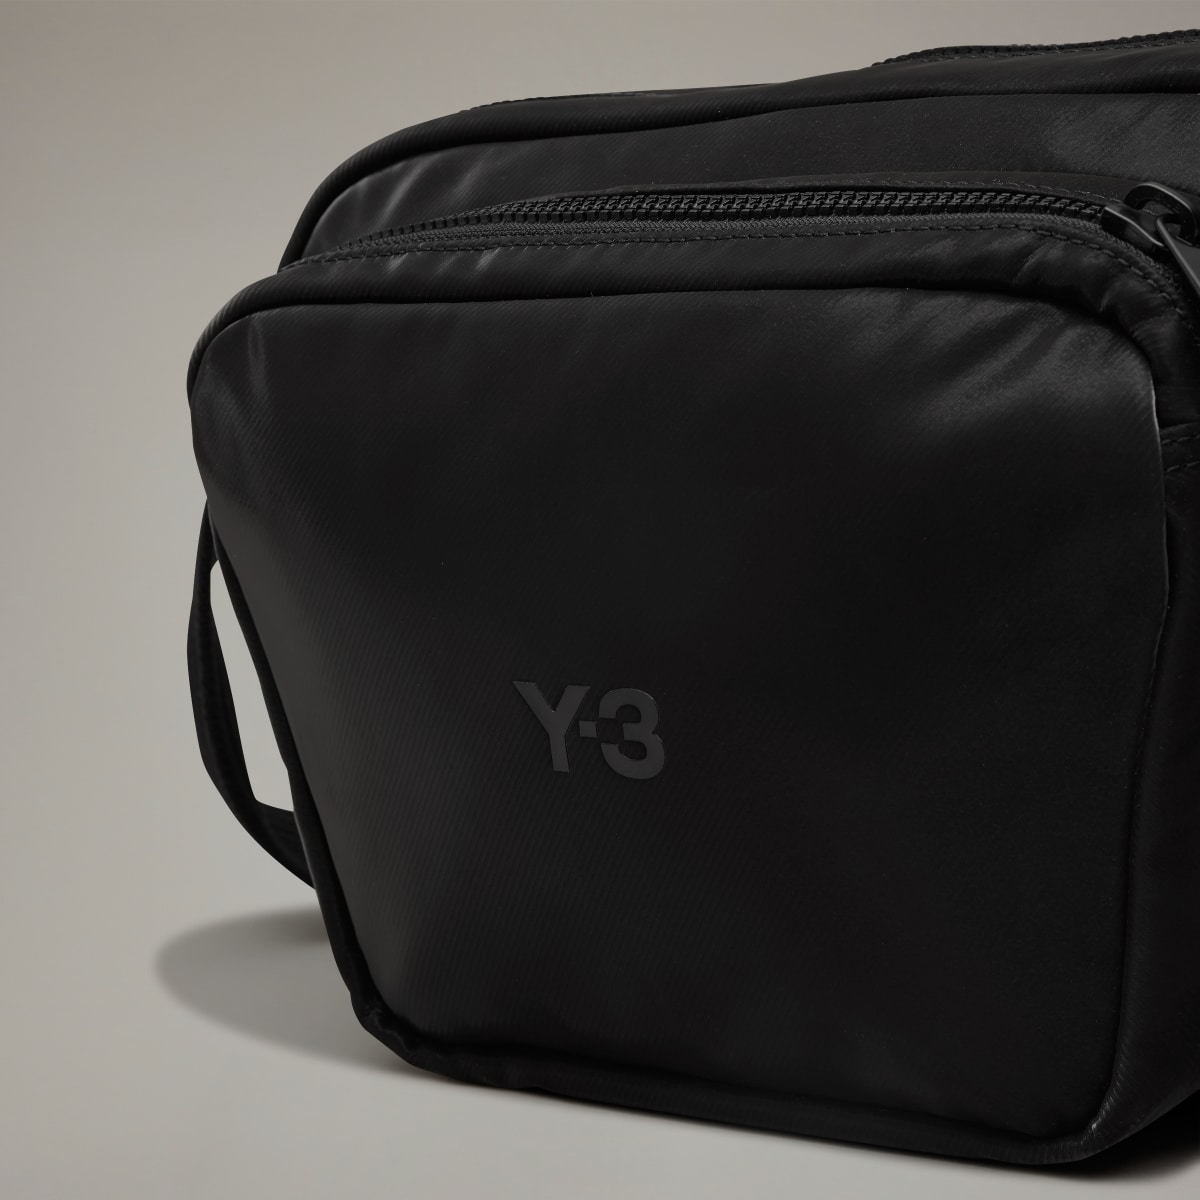 Adidas Y-3 Crossbody Bag. 7